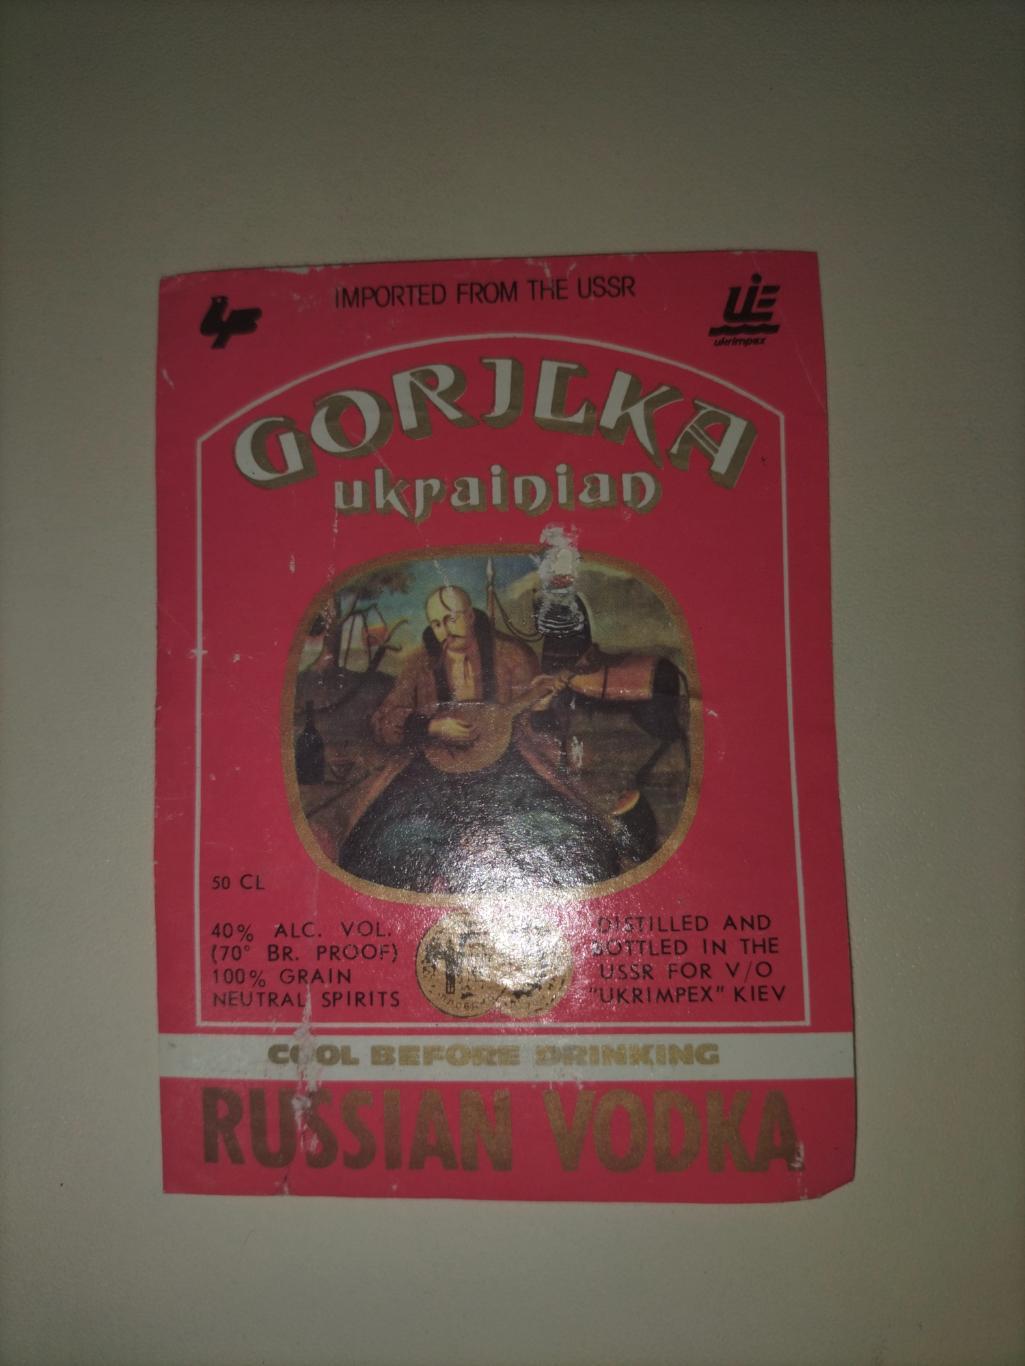 Gorilka Ukrainian 1